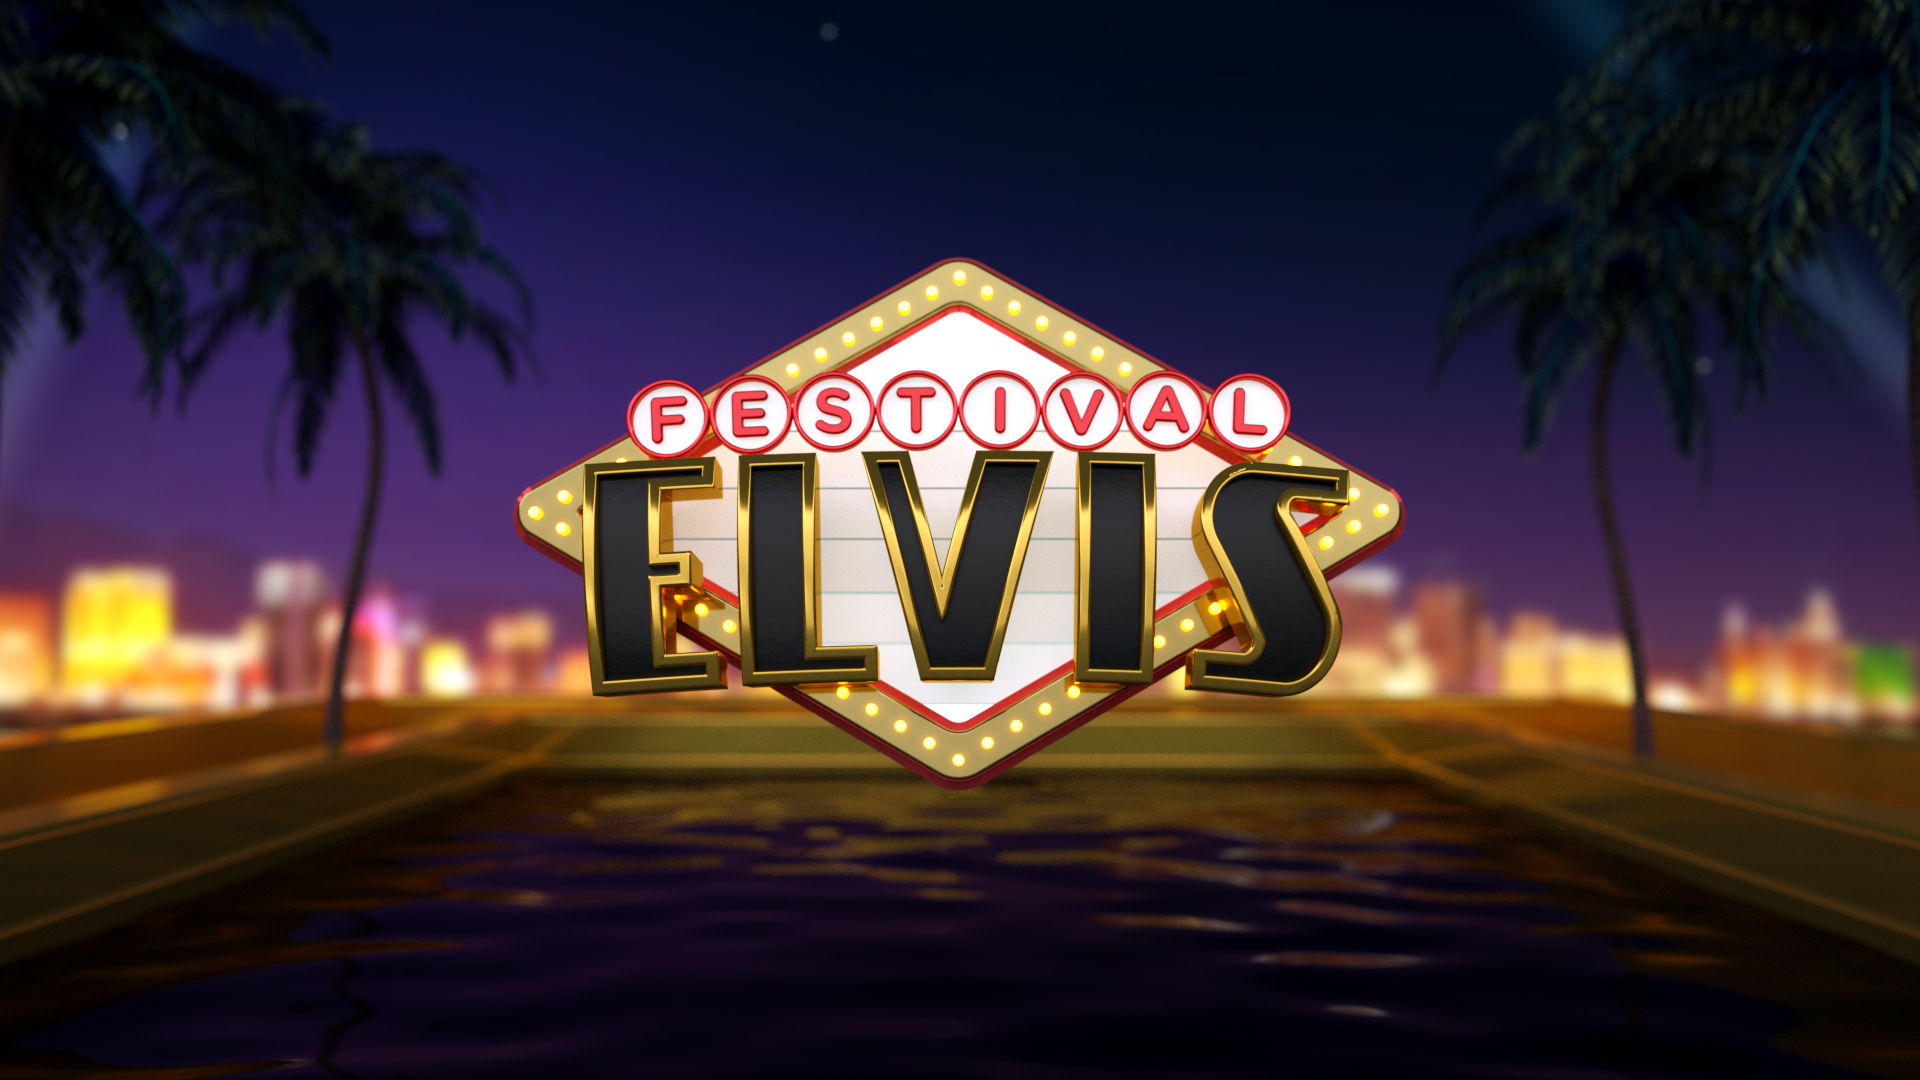 Festival Elvis